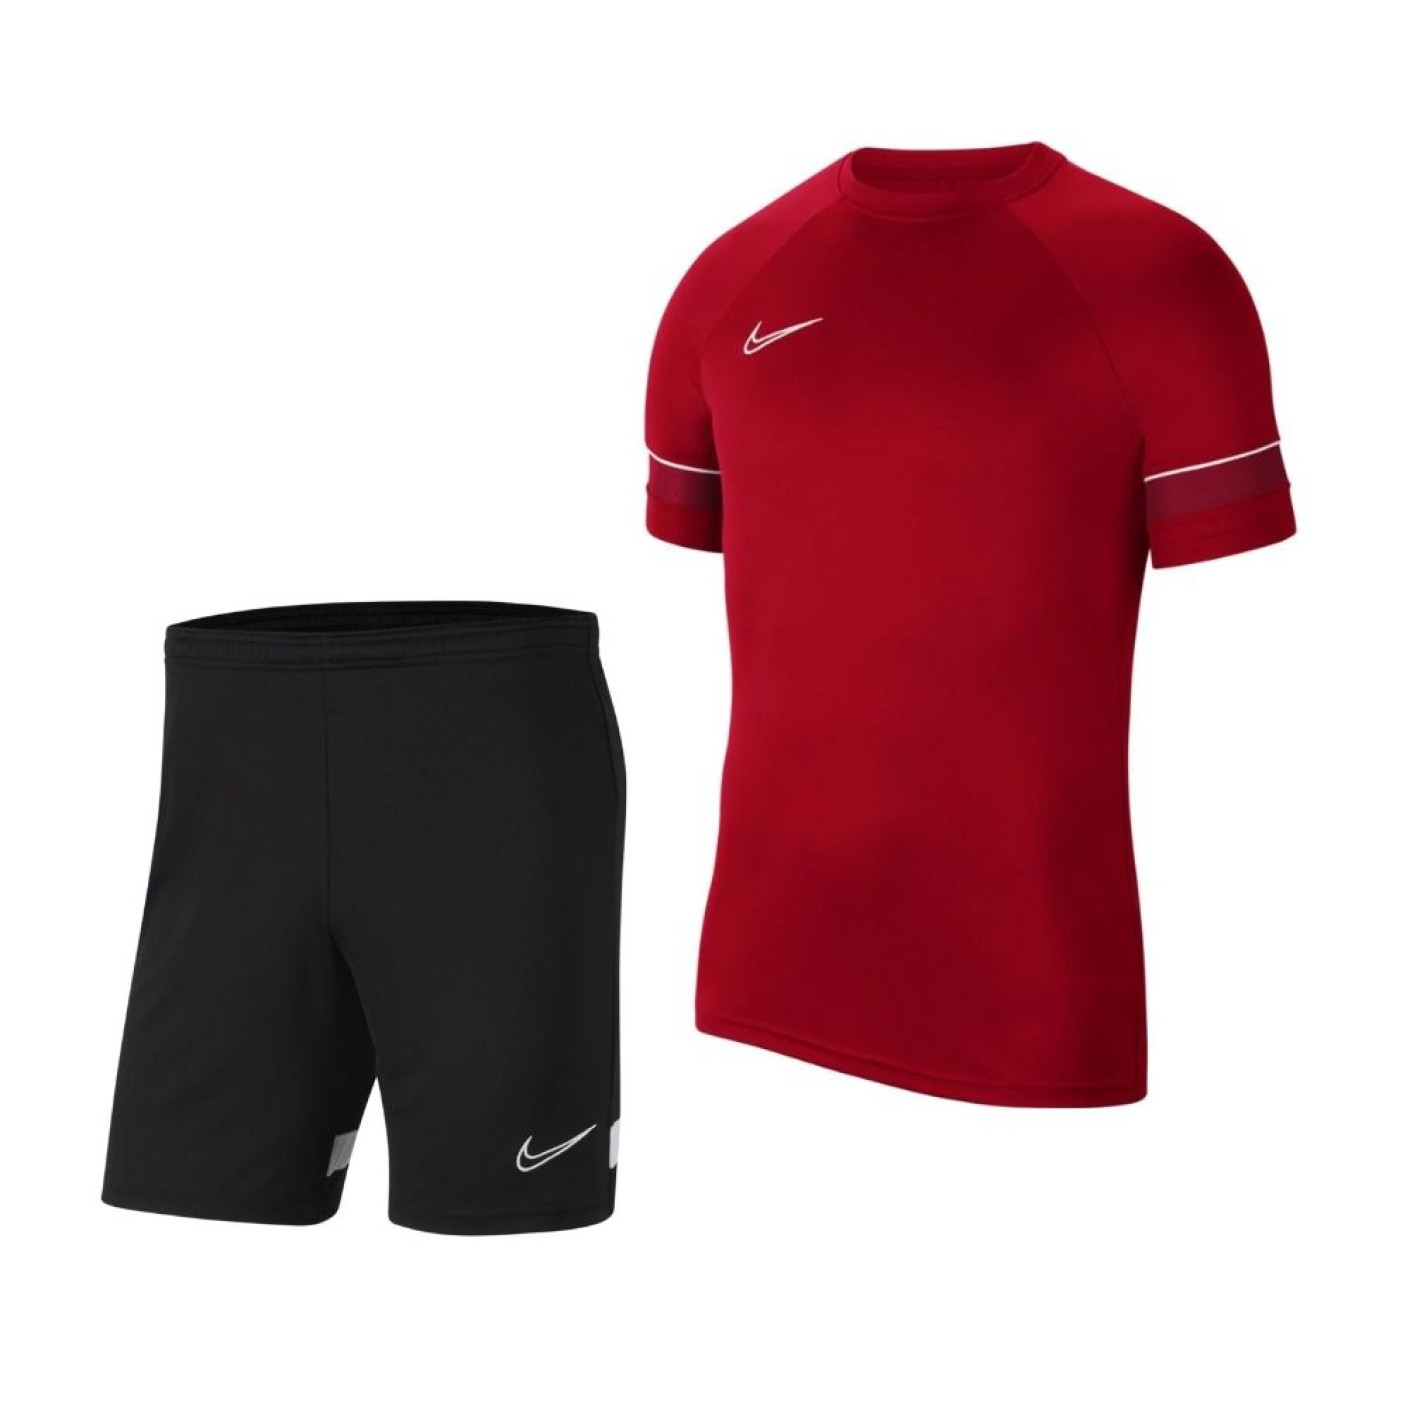 Kit d'entraînement Nike Dri-Fit Academy 21 rouge noir